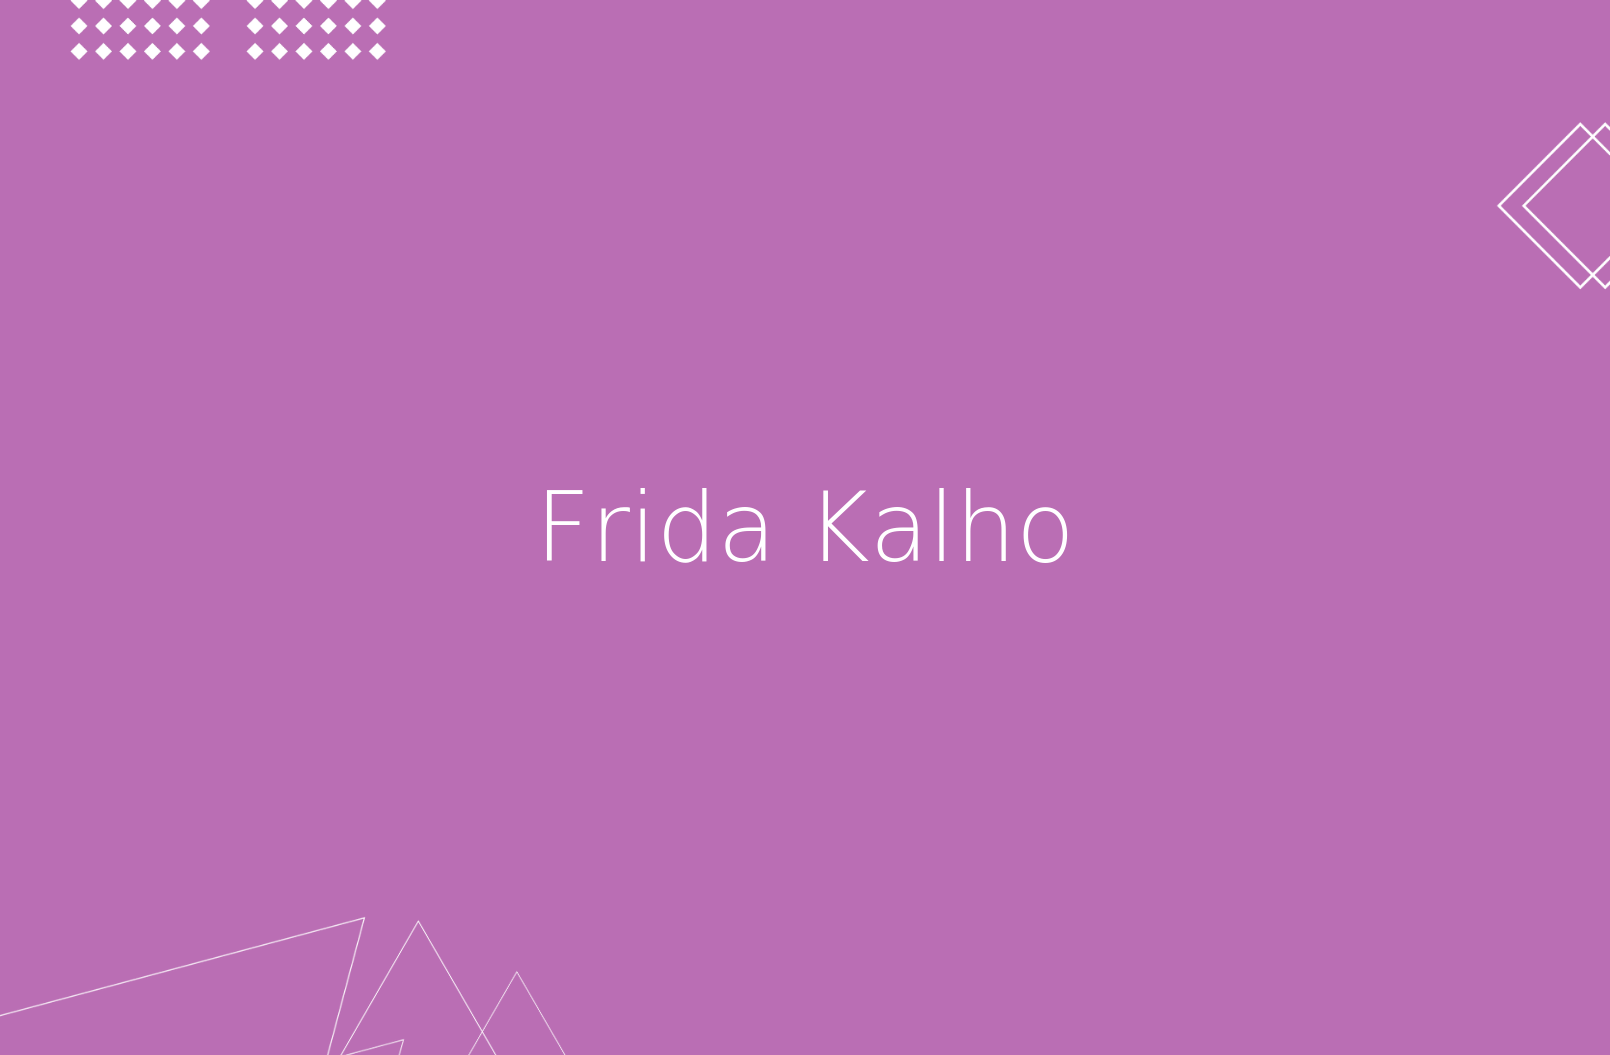 Biografía de Frida Khalo